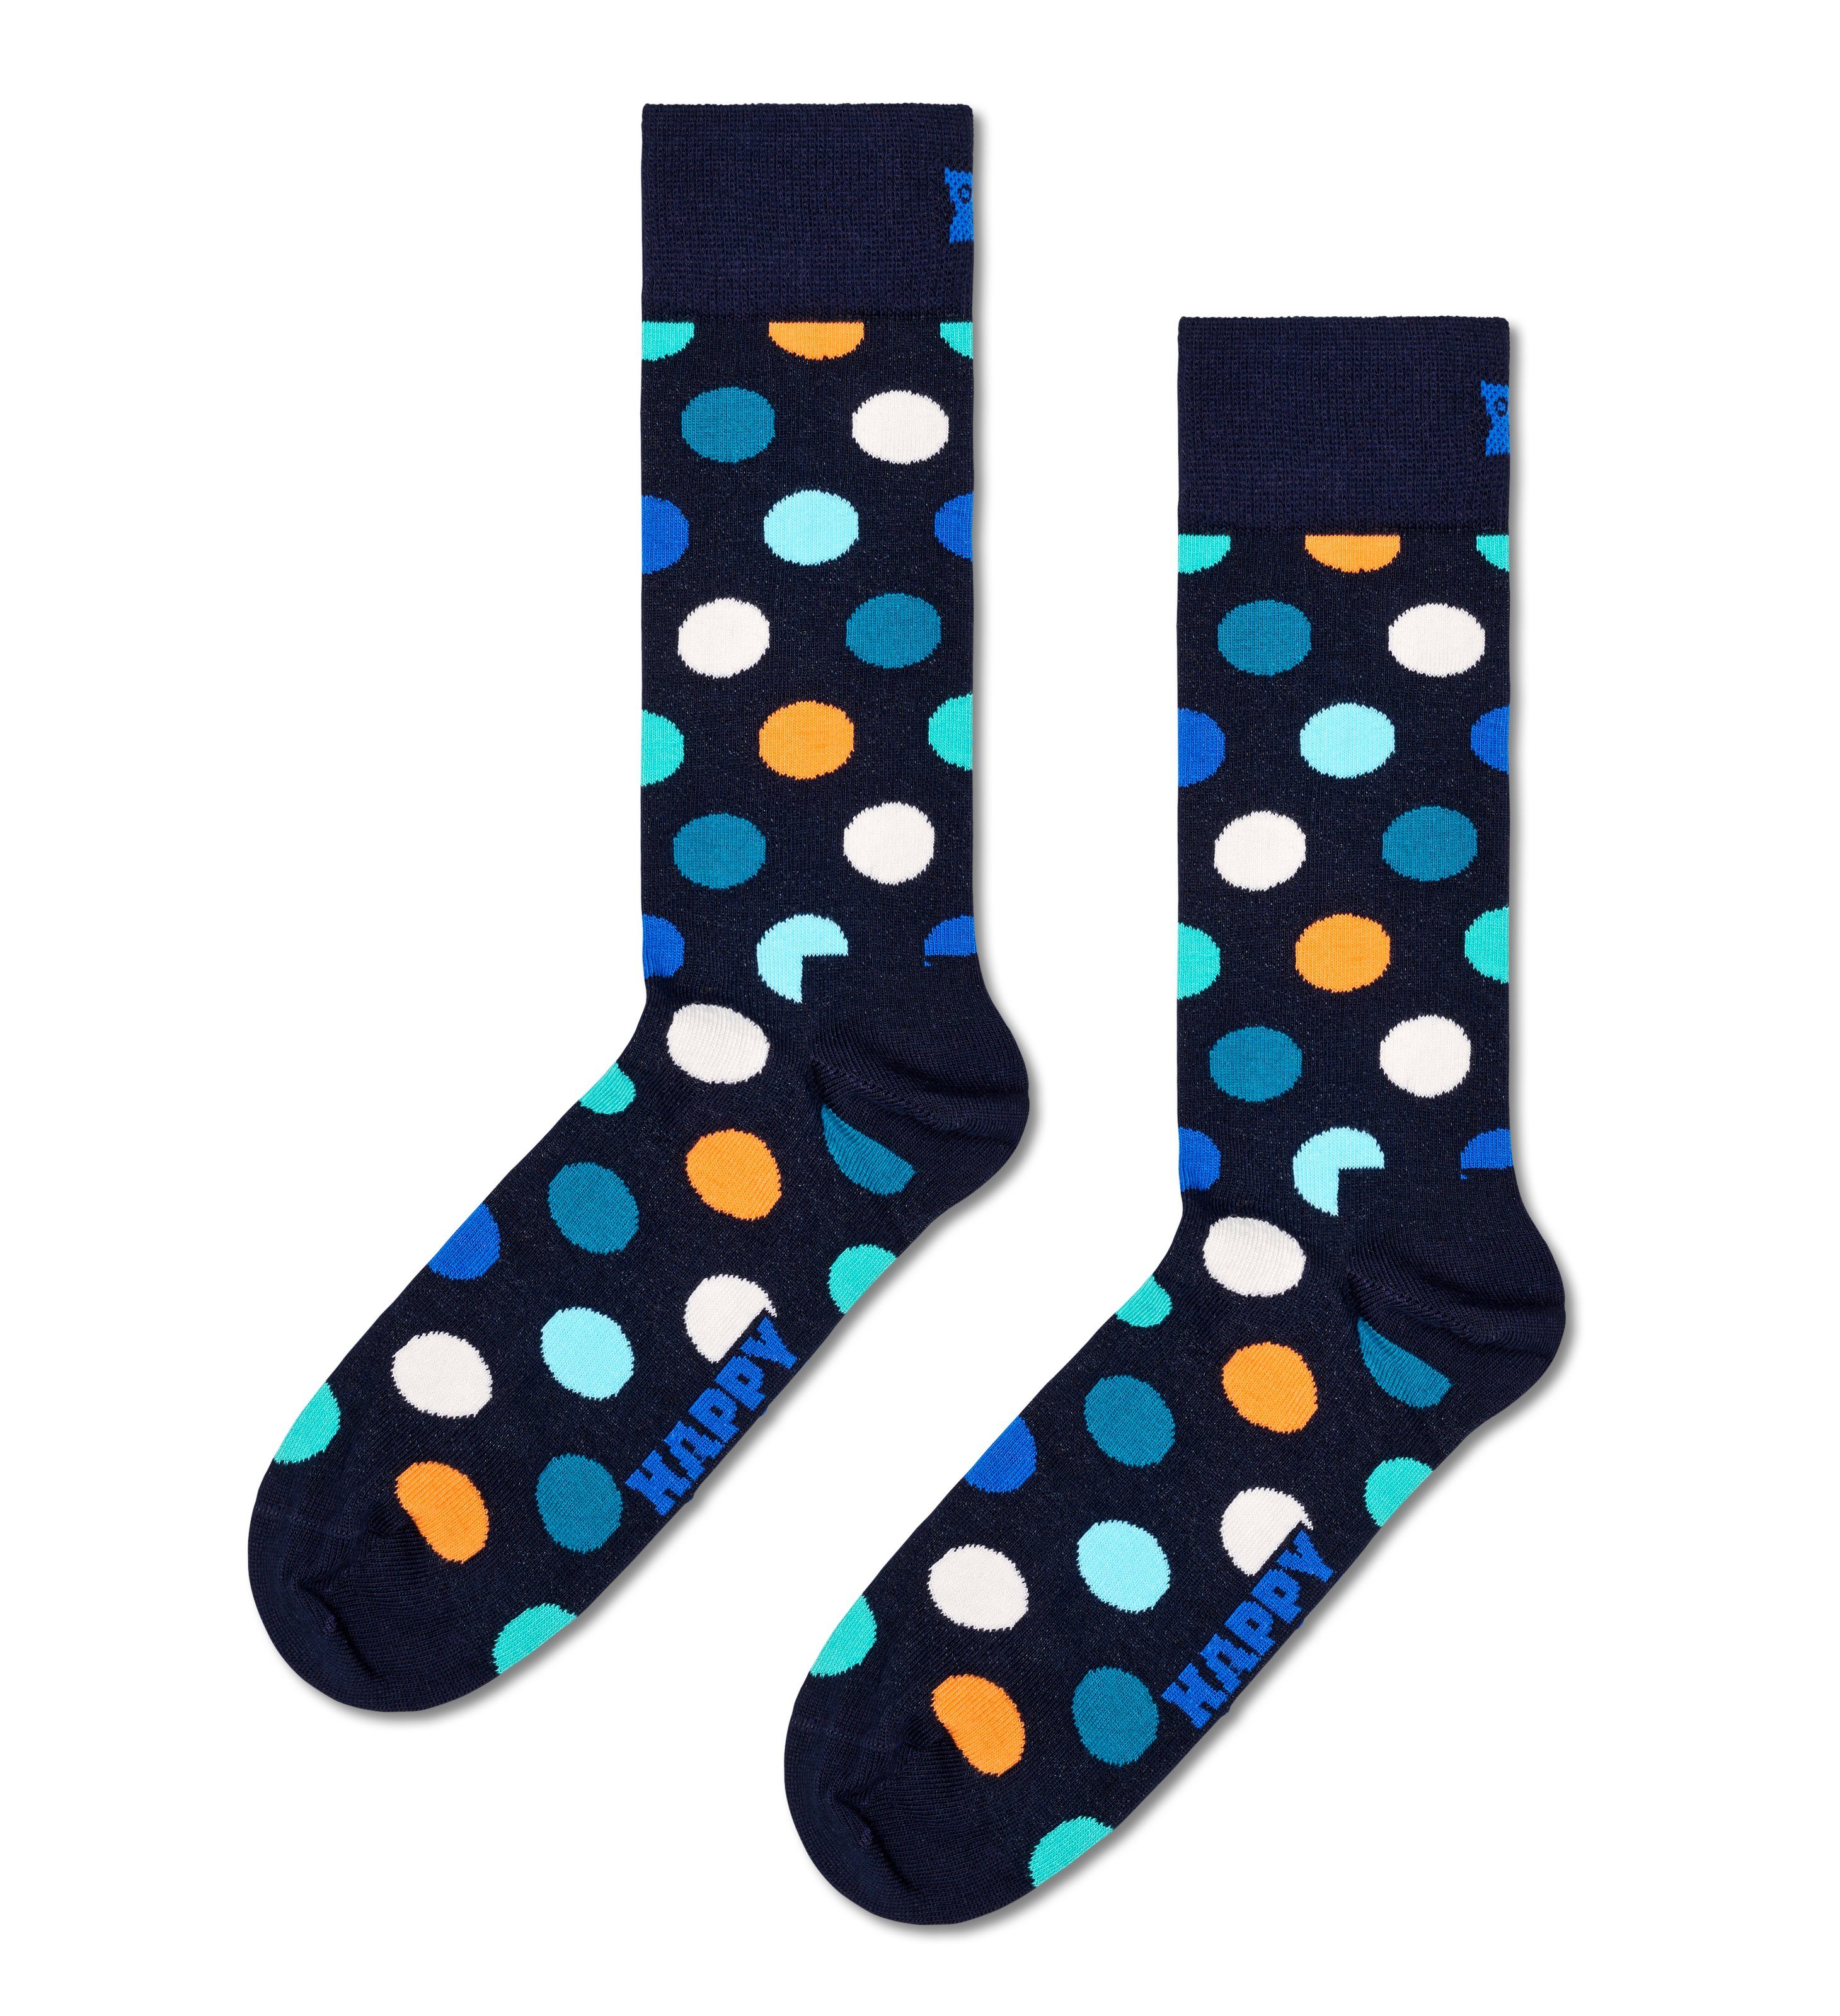 Set Socks Bunte 4-Paar) Gift Navy 4er Happy Pack Socken Socks Multi-Color Socken (Packung, im